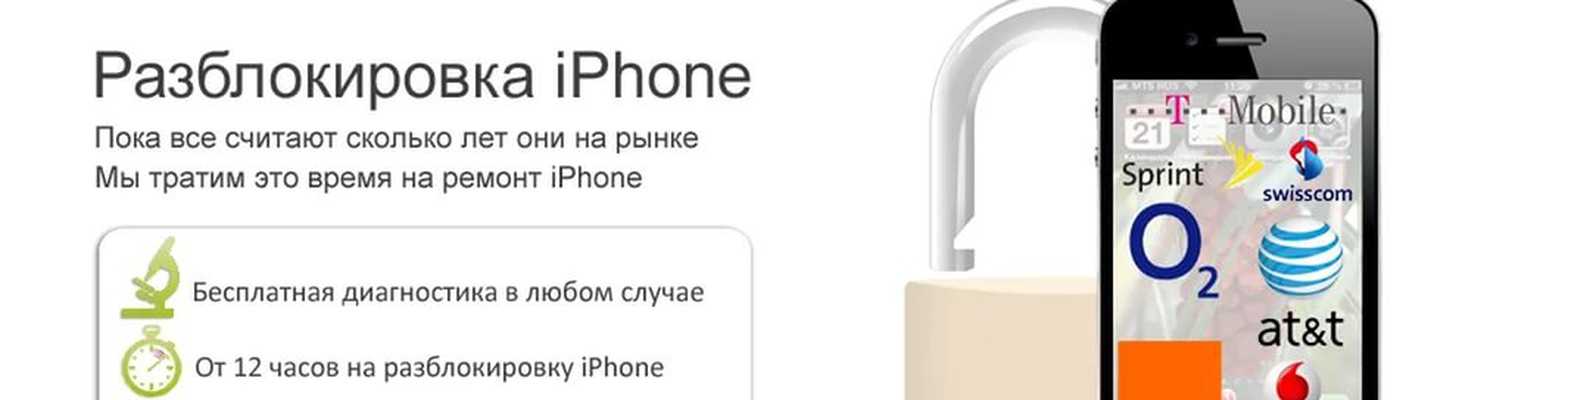 Как разблокировать iphone 5? как разблокировать iphone/айфон (4s, 5, 5c, 5s, 6, 6 plus), если забыт пароль, самостоятельно